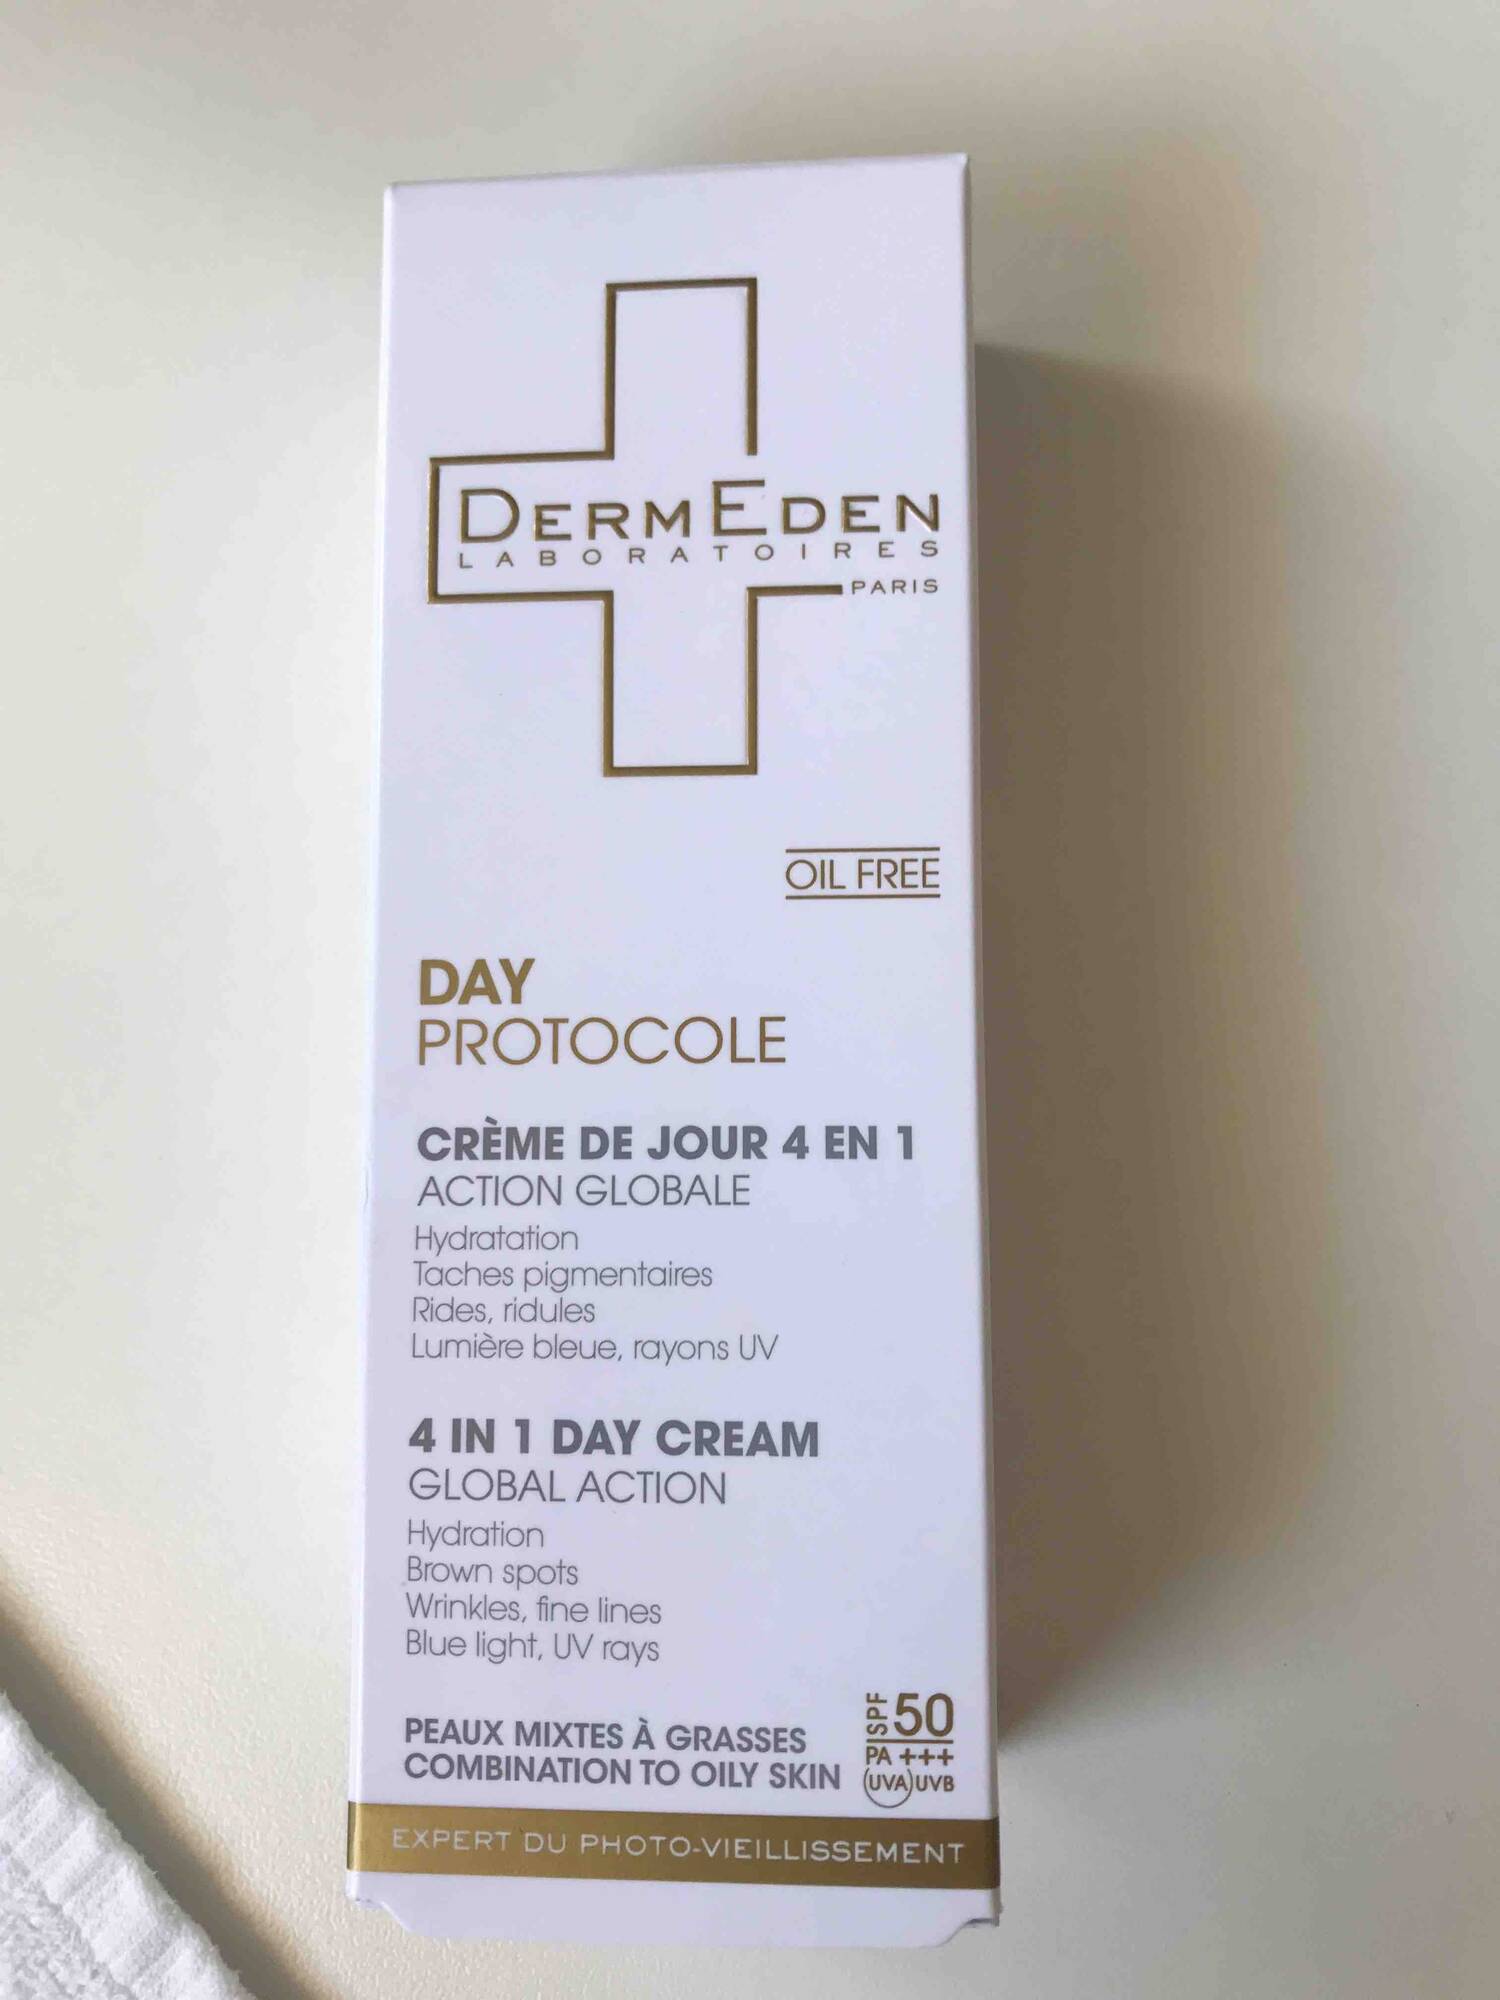 DERMEDEN - Day protocole - Crème de jour 4 en 1 SPF 50